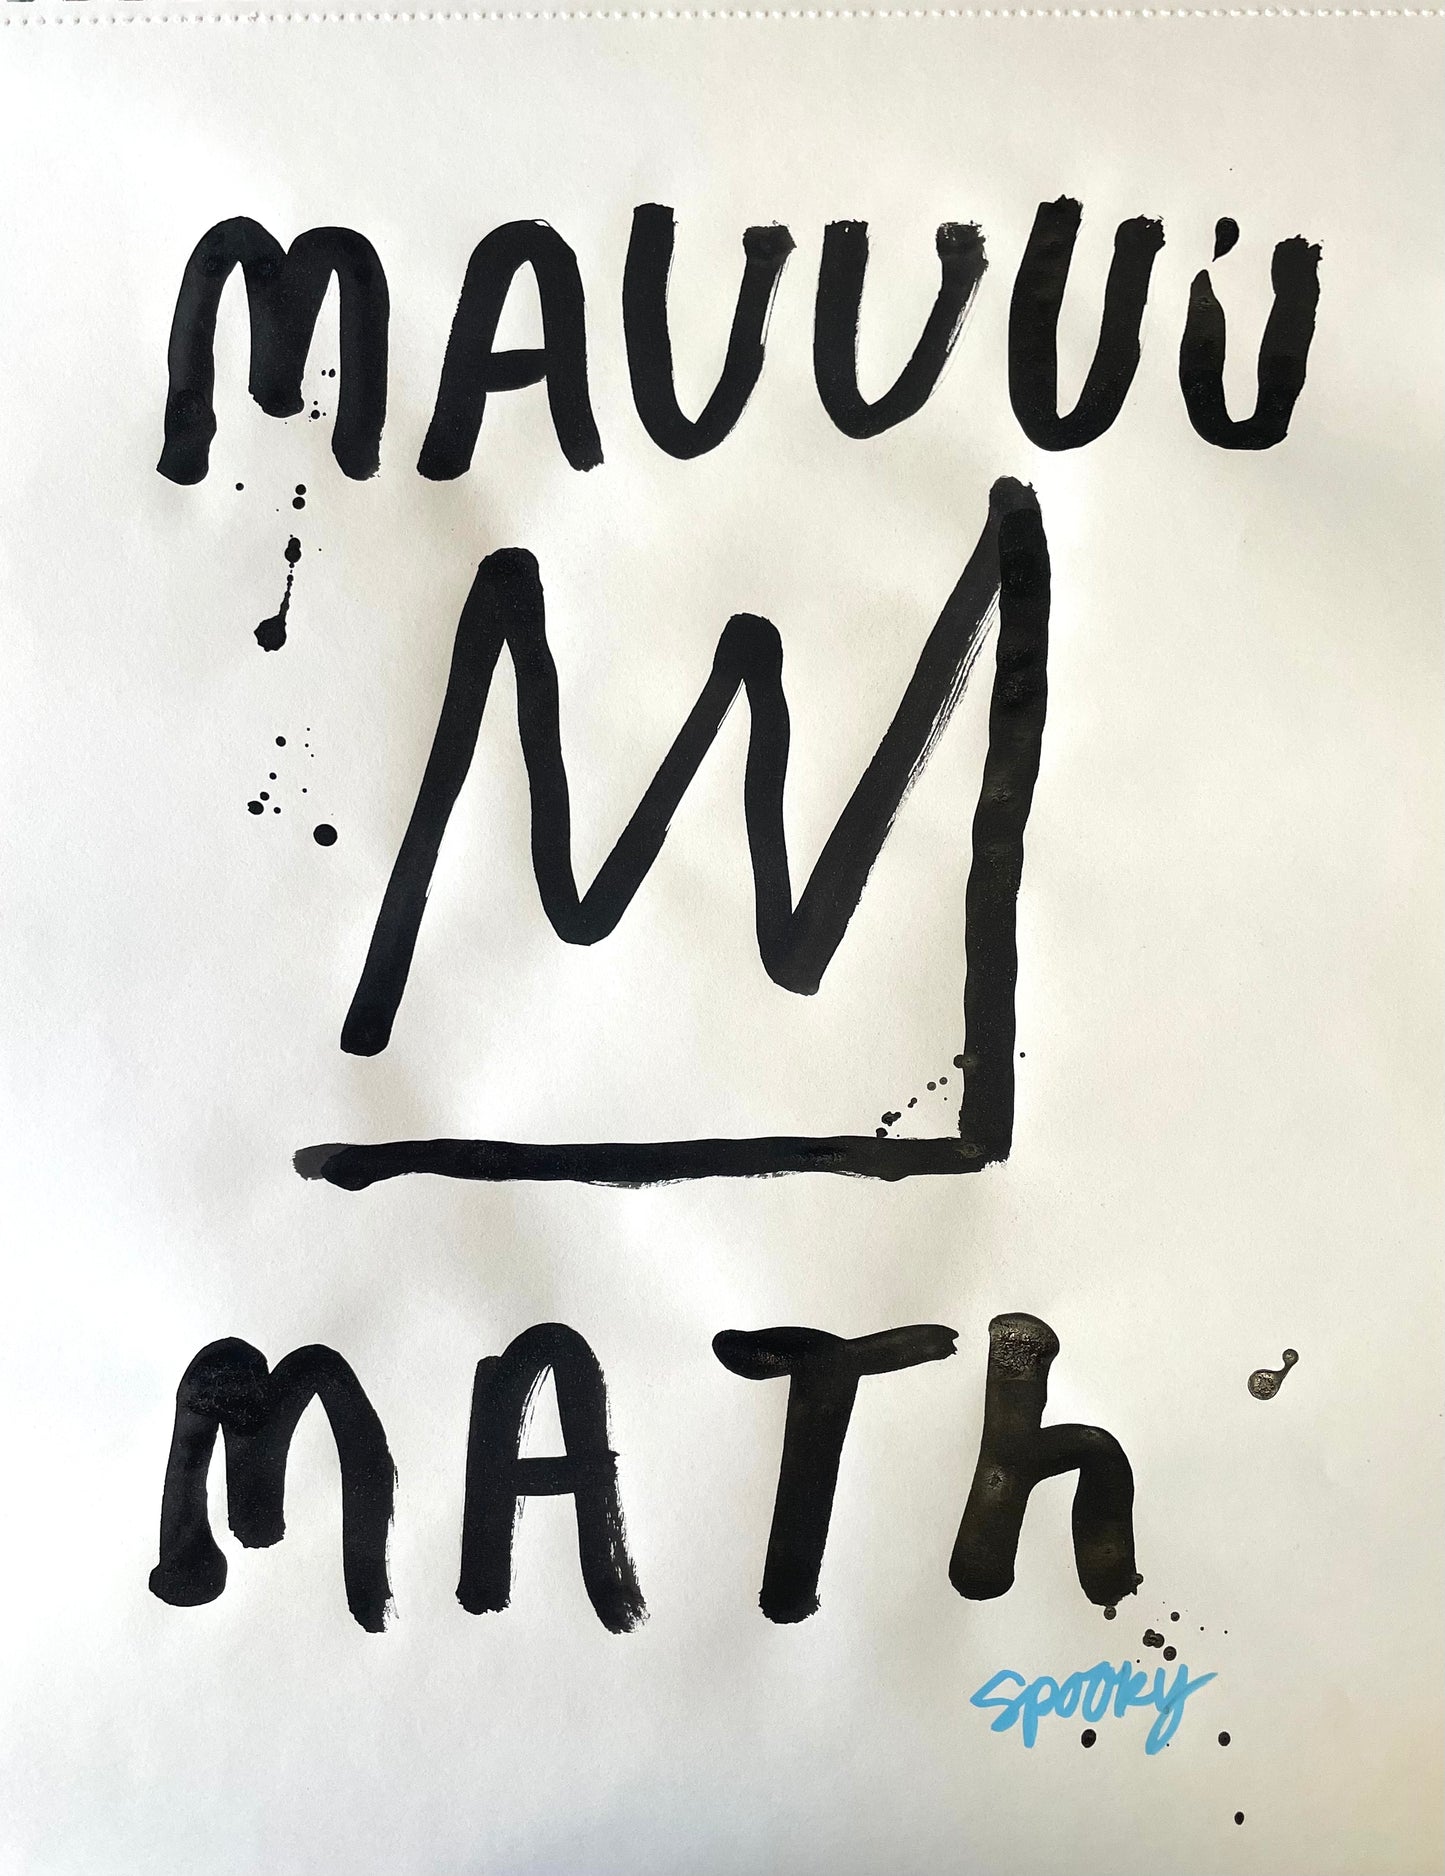 Mauuuu-math